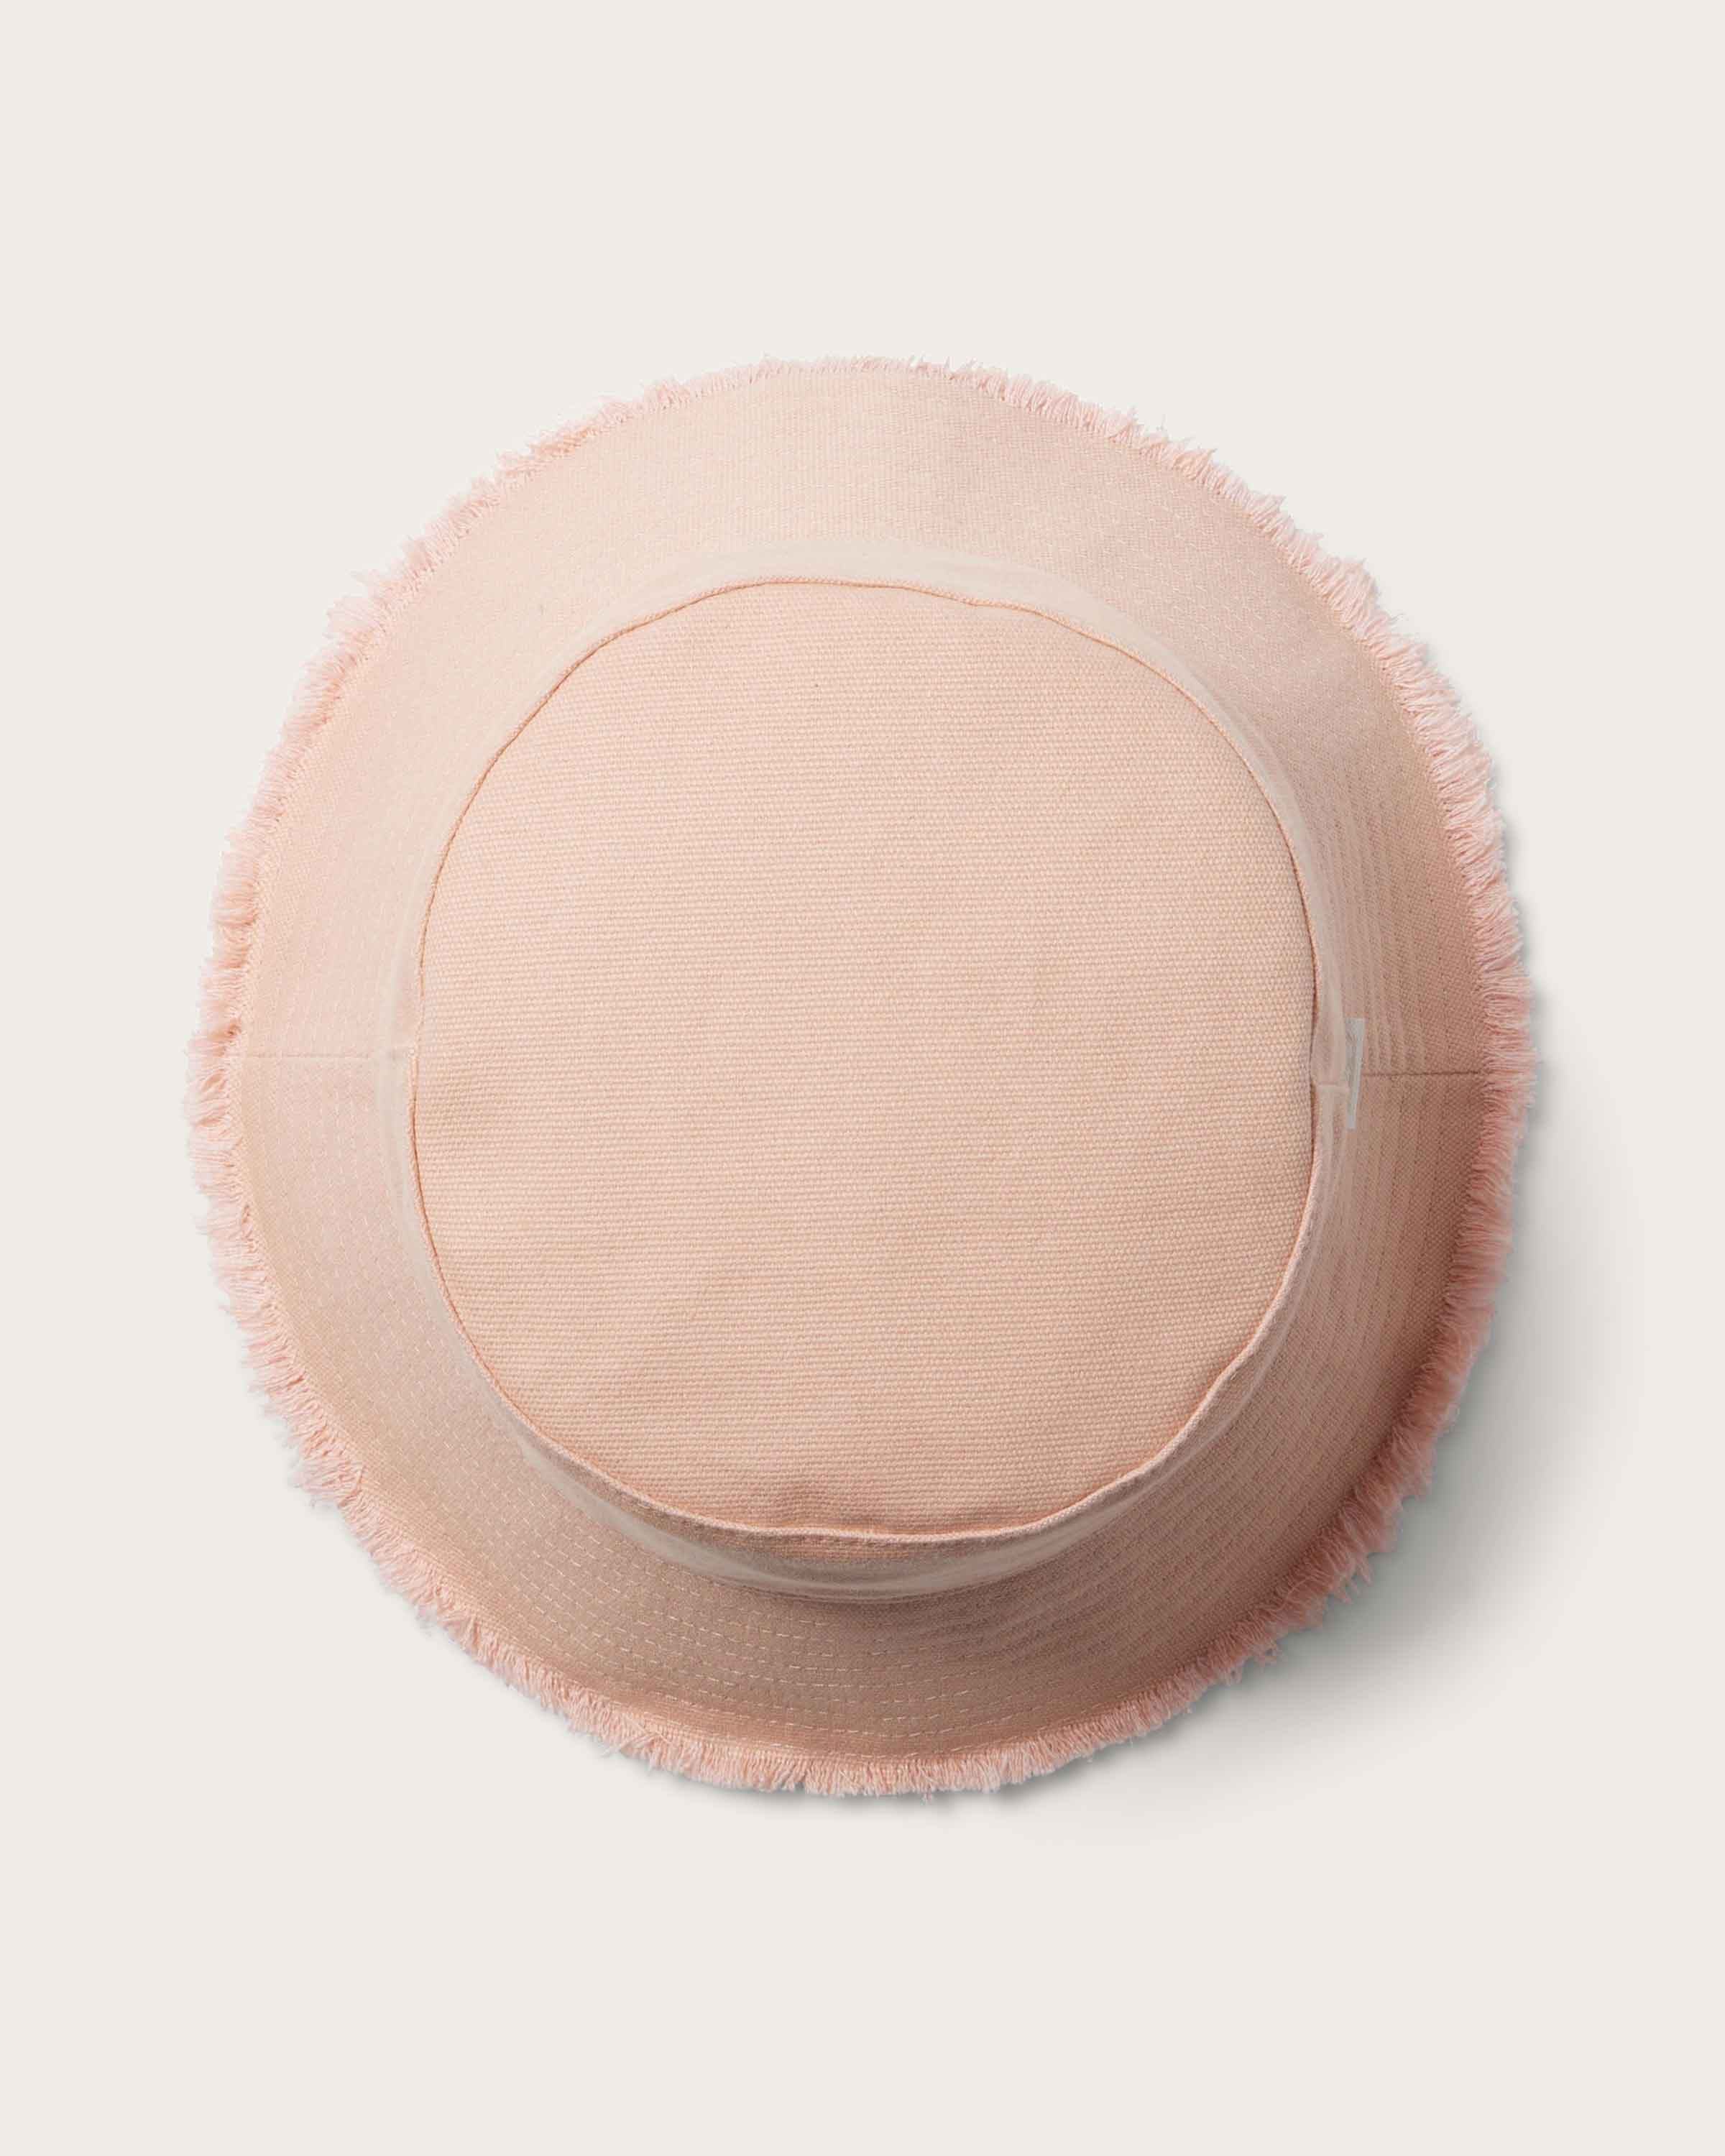 Coronado Bucket in Soft Pink - undefined - Hemlock Hat Co. Buckets